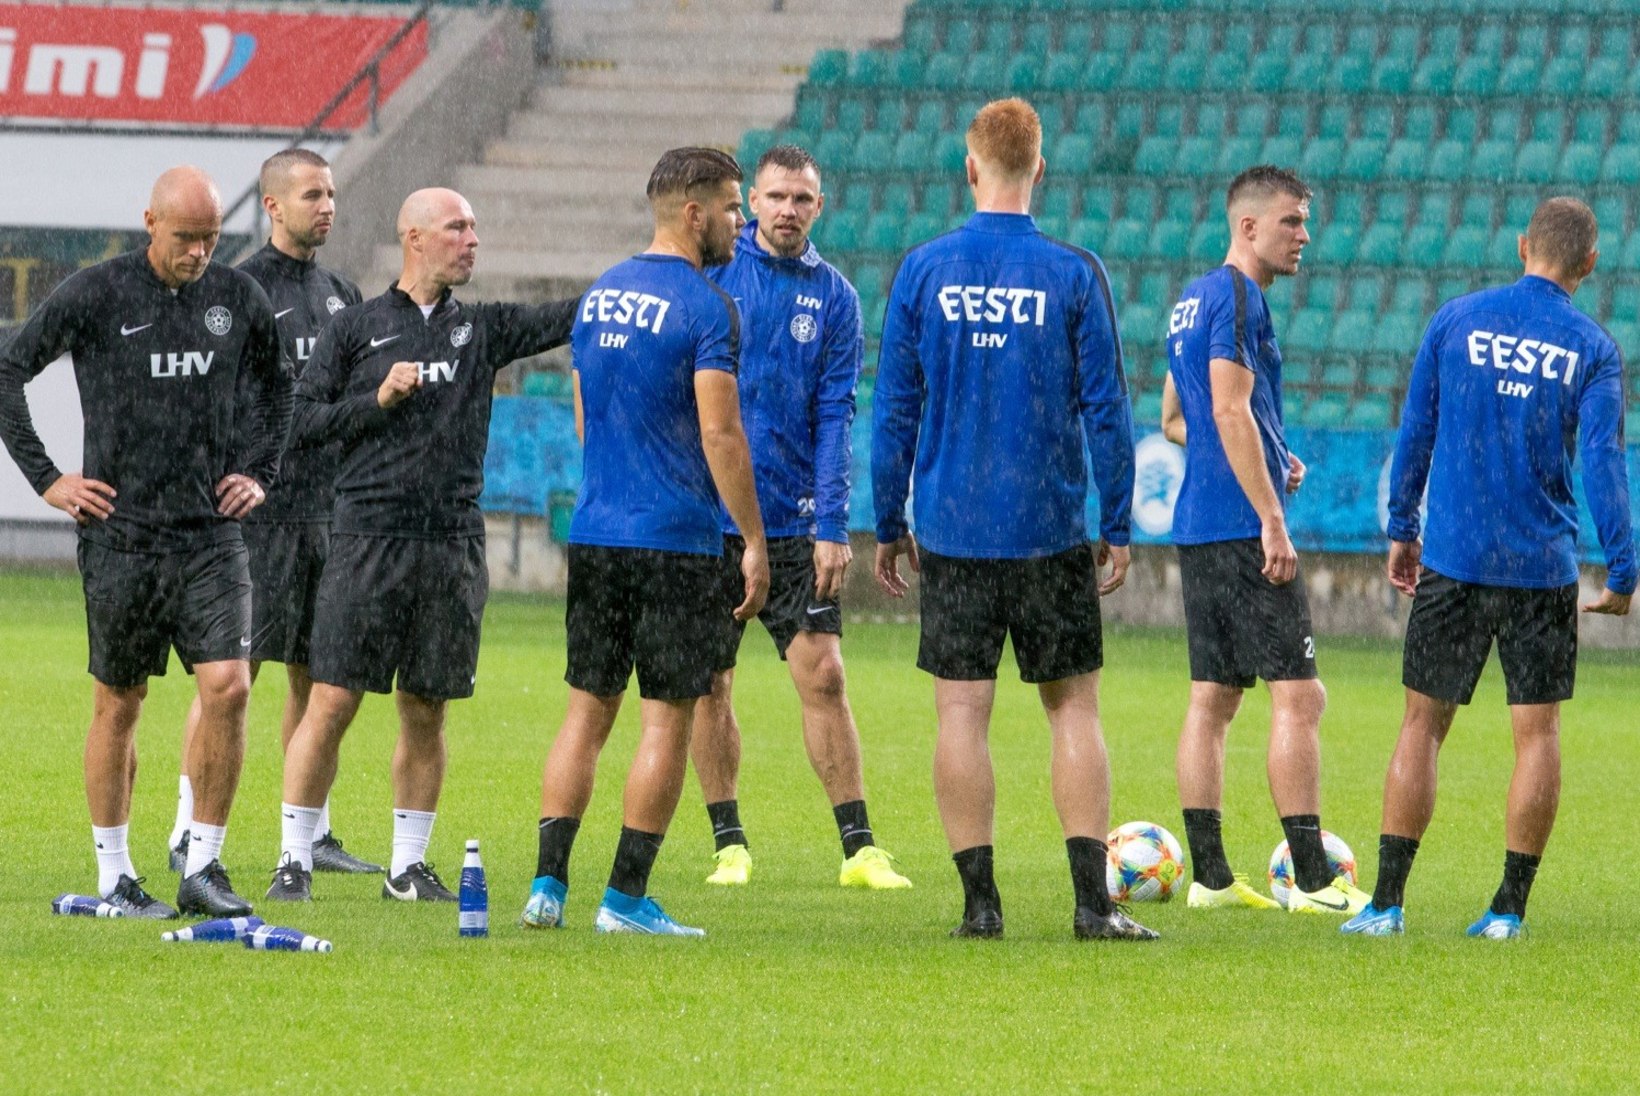 VÄGEV: Soome jalgpallikoondis kohtub enne EM-finaalturniiri Eestiga